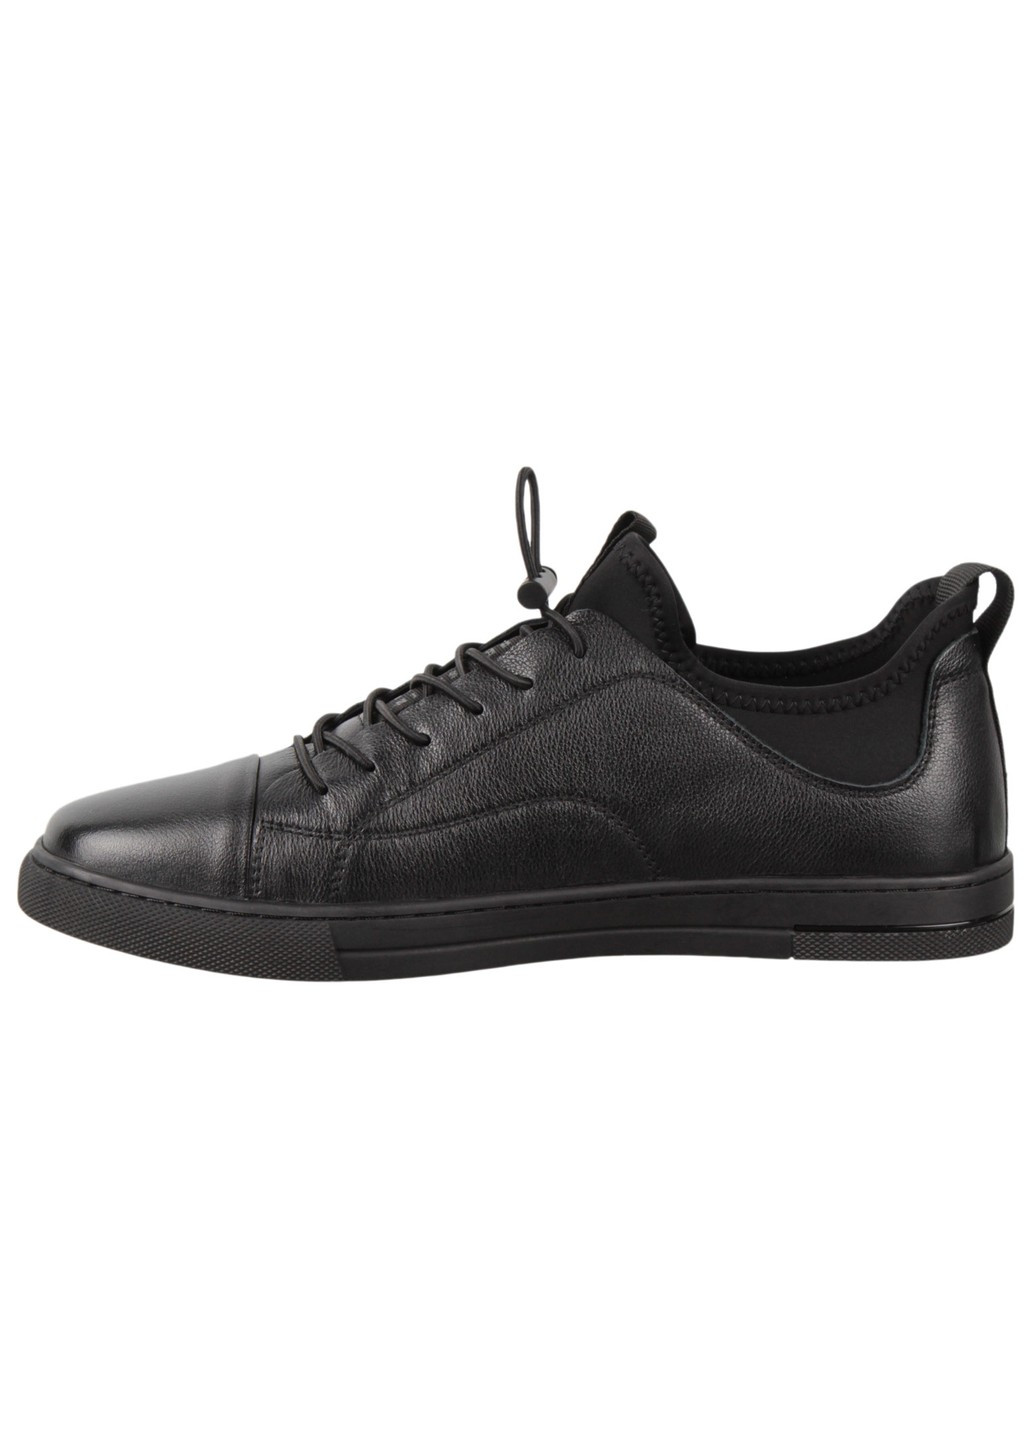 Черные демисезонные мужские кроссовки 198803 Buts